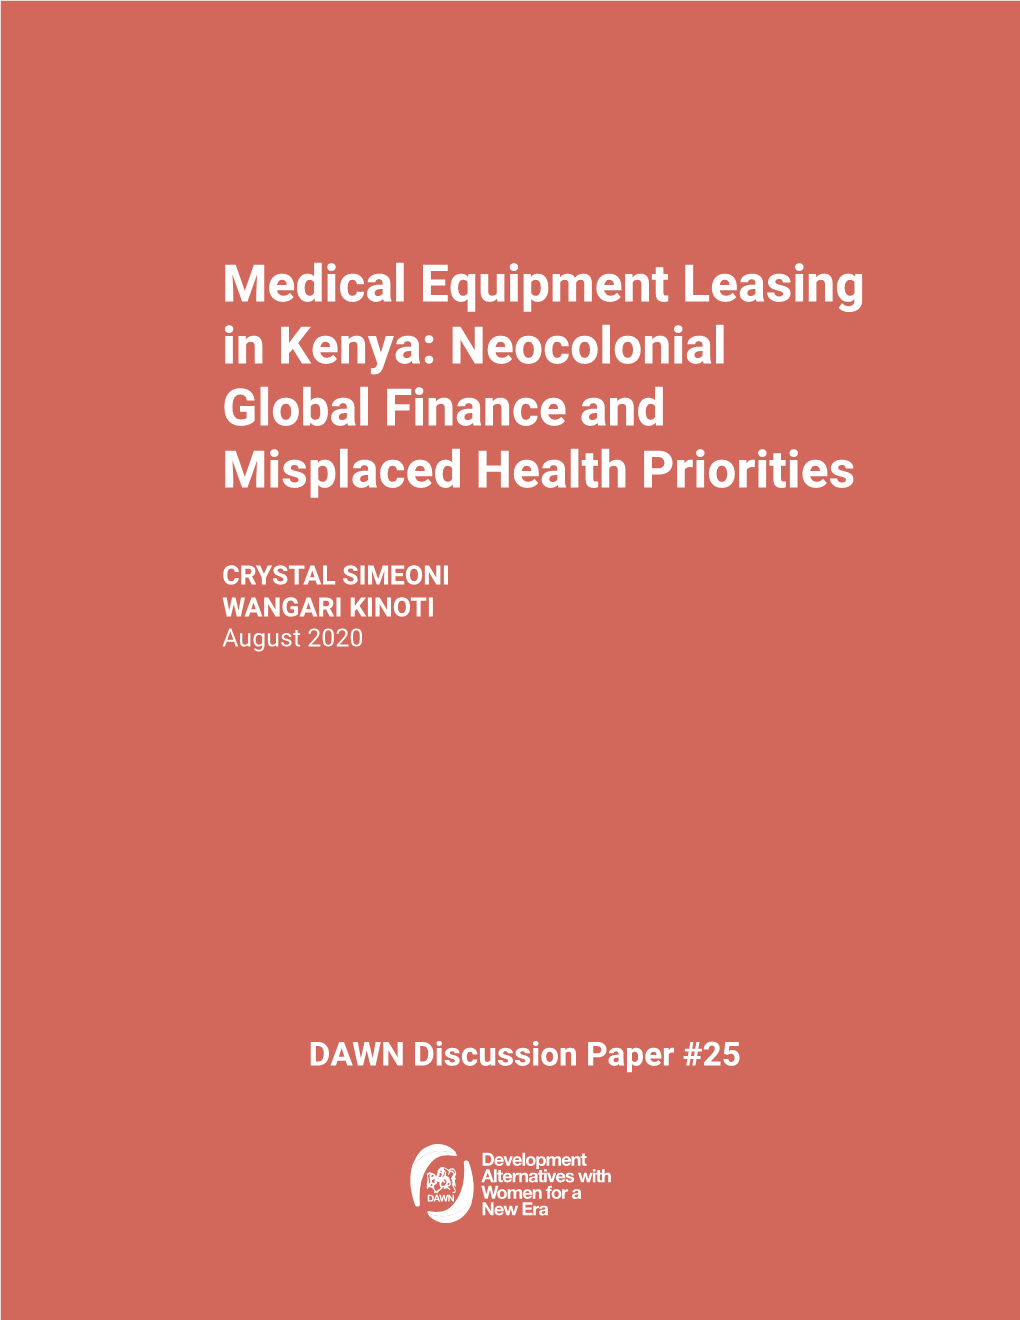 Medical Equipment Leasing in Kenya: Neocolonial Global Finance and Misplaced Health Priorities